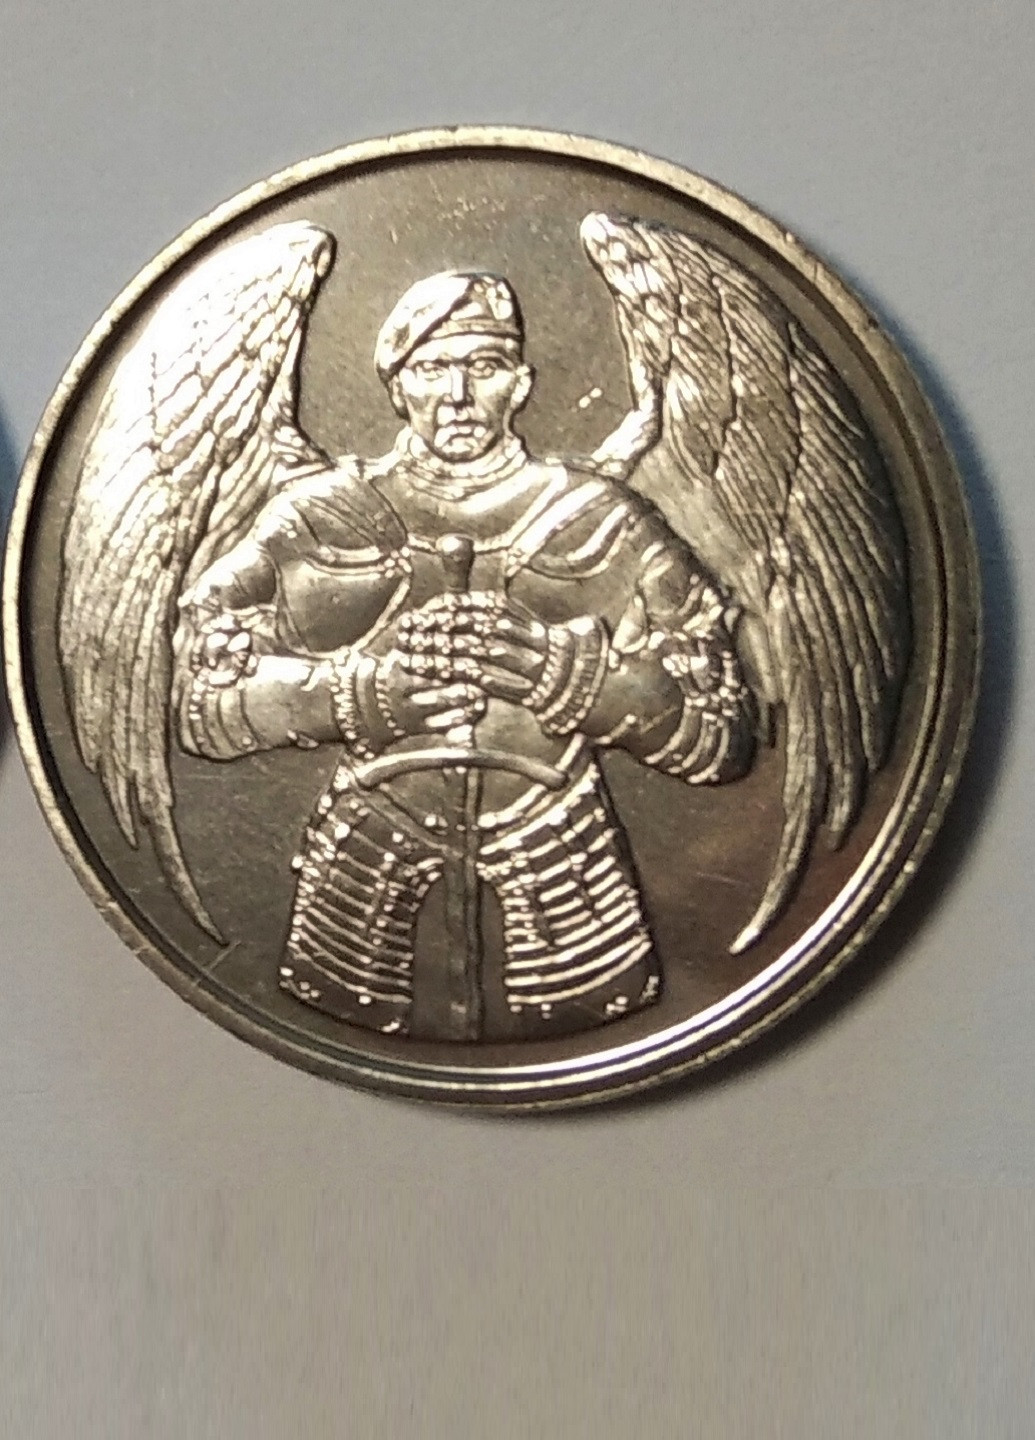 Монета Десантно-штурмові війська ЗСУ Blue Orange (253730027)